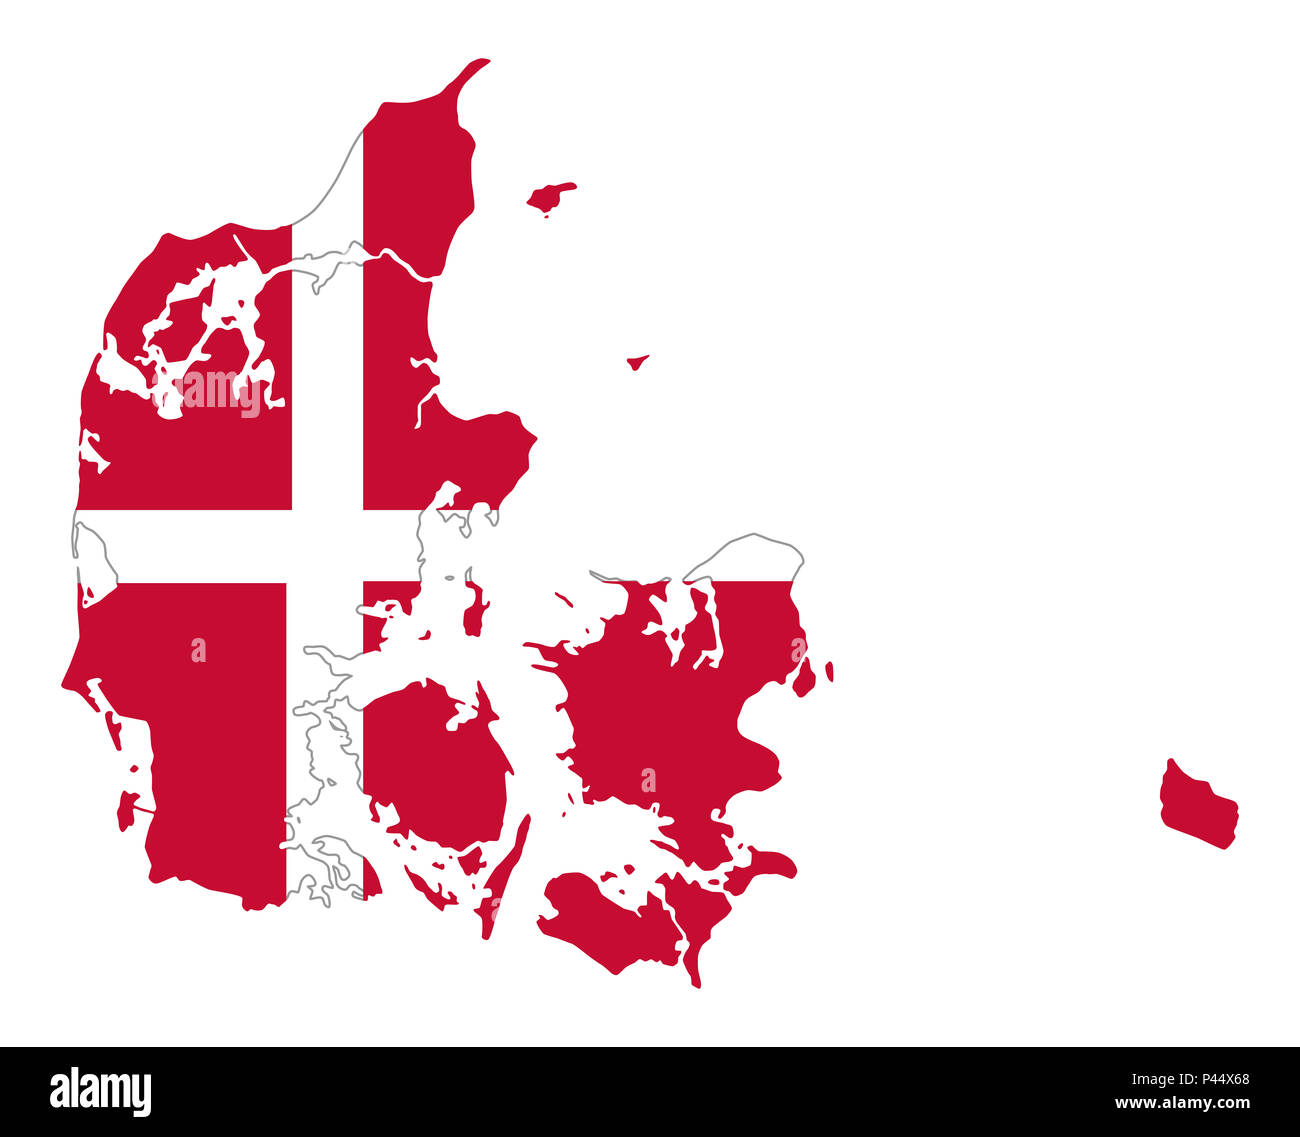 Flagge von Dänemark im Land Silhouette. Der dänische Staat Stern, ein weißes Skandinavisches Kreuz auf rotem Feld. Großbritannien und die nordischen Länder in Europa. Stockfoto